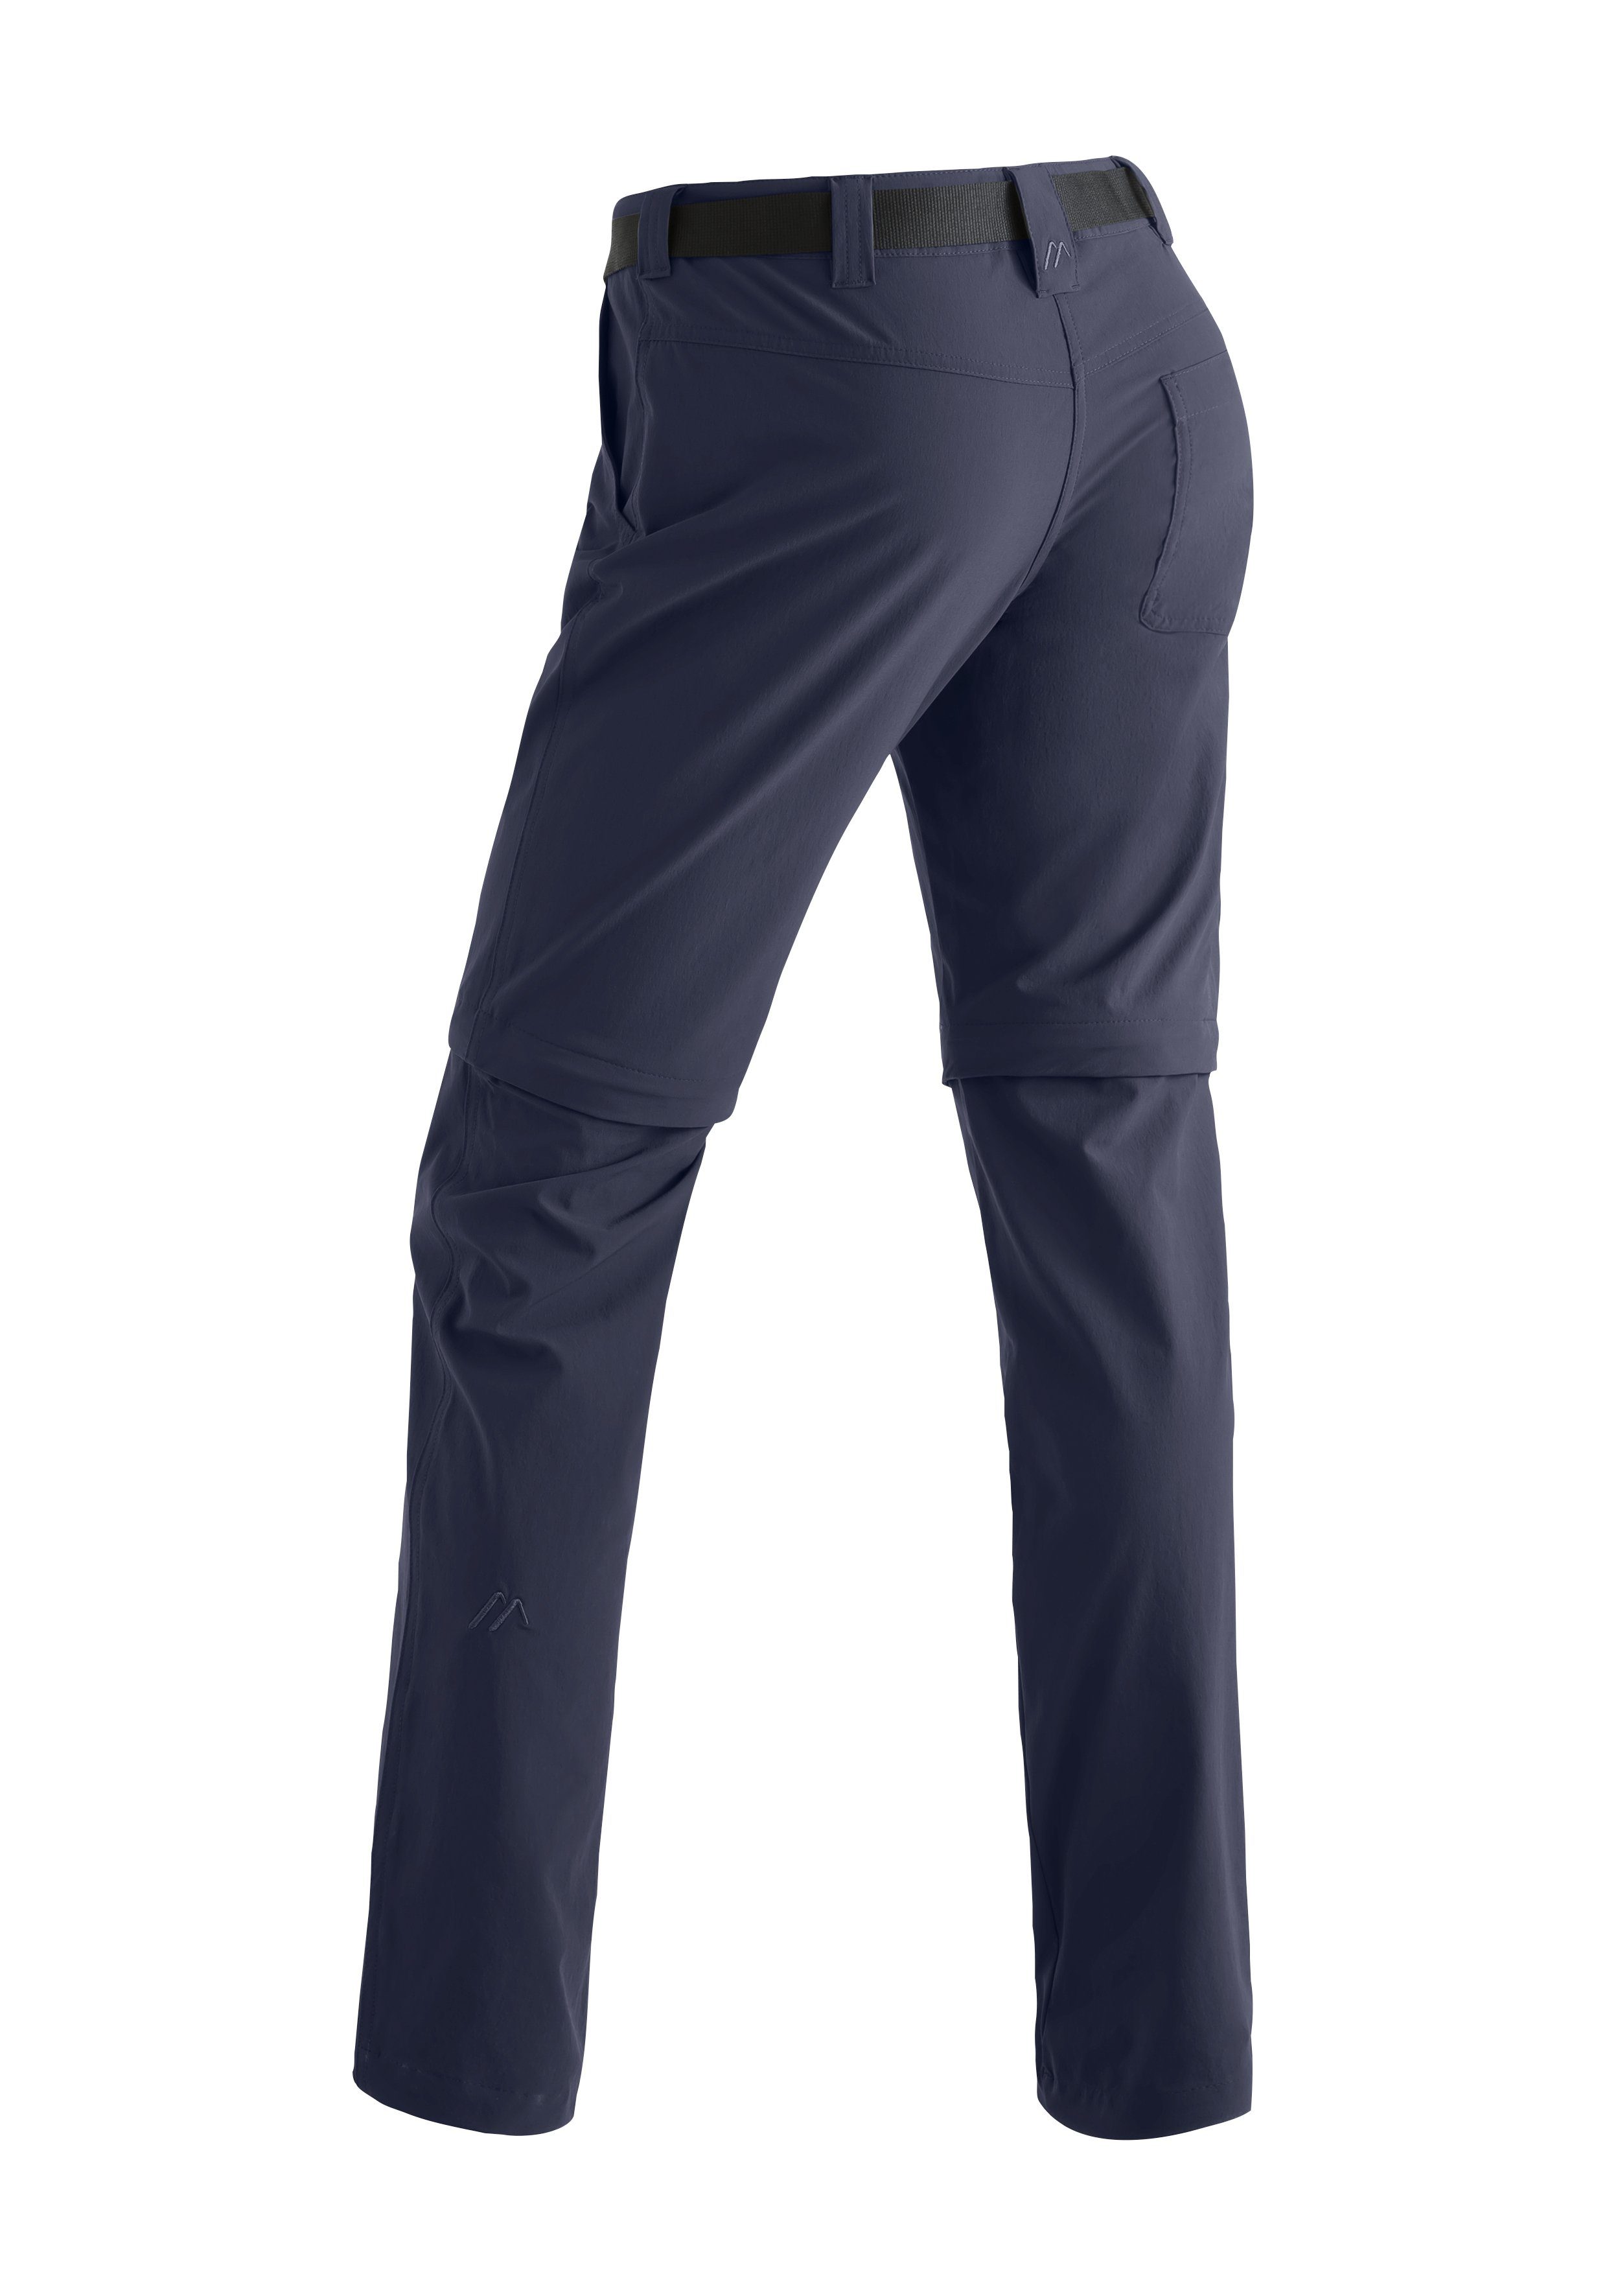 Inara Wanderhose, blau slim Outdoor-Hose Sports Damen Funktionshose zip zipp-off Maier atmungsaktive